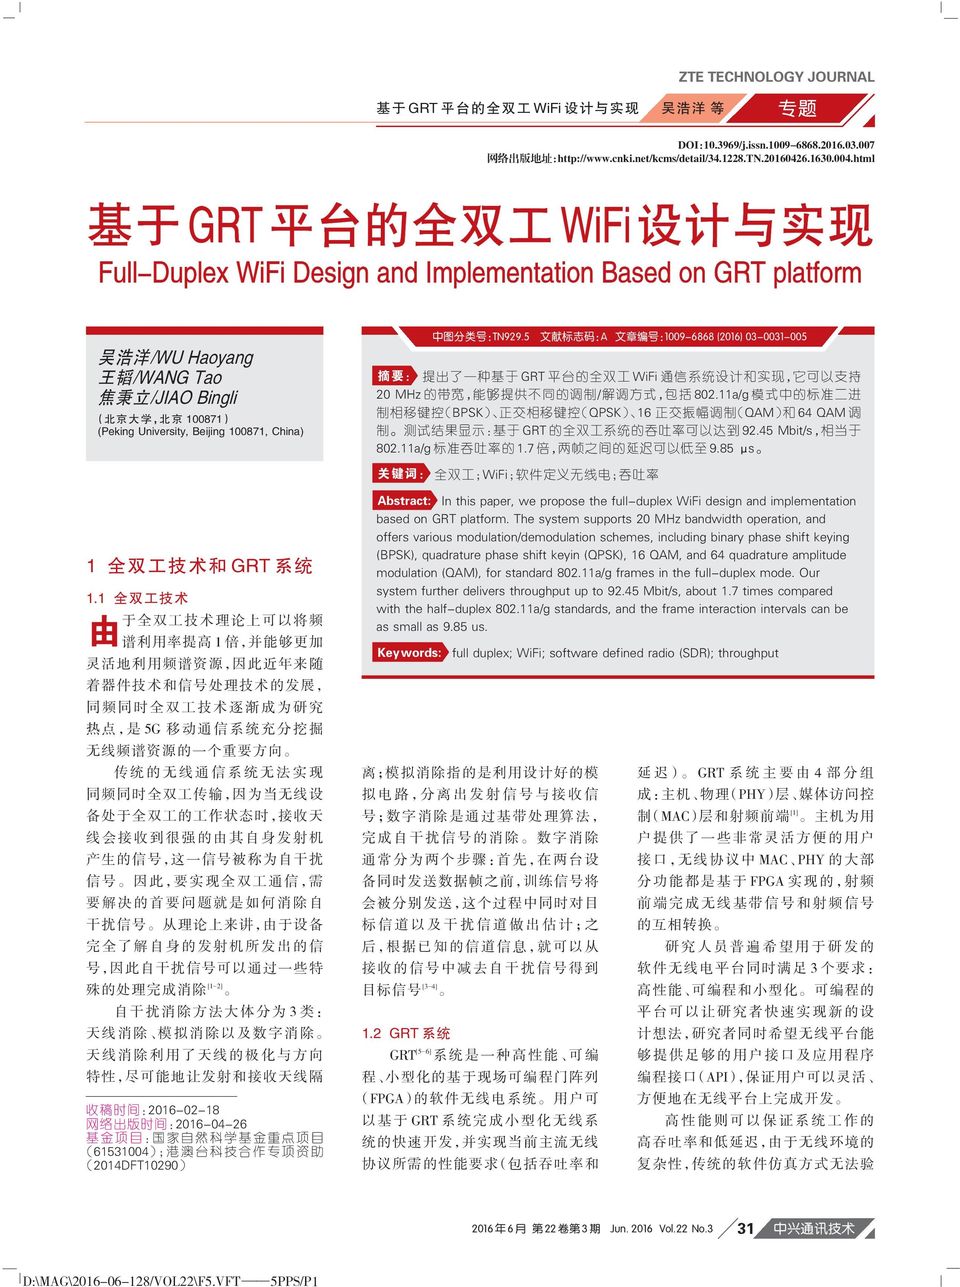 :TN929.5 文 献 标 志 码 :A 文 章 编 号 :1009-6868 (2016) 03-0031-005 摘 要 : 提 出 了 一 种 基 于 GRT 平 台 的 全 双 工 WiFi 通 信 系 统 设 计 和 实 现, 它 可 以 支 持 20 MHz 的 带 宽, 能 够 提 供 不 同 的 调 制 / 解 调 方 式, 包 括 802.